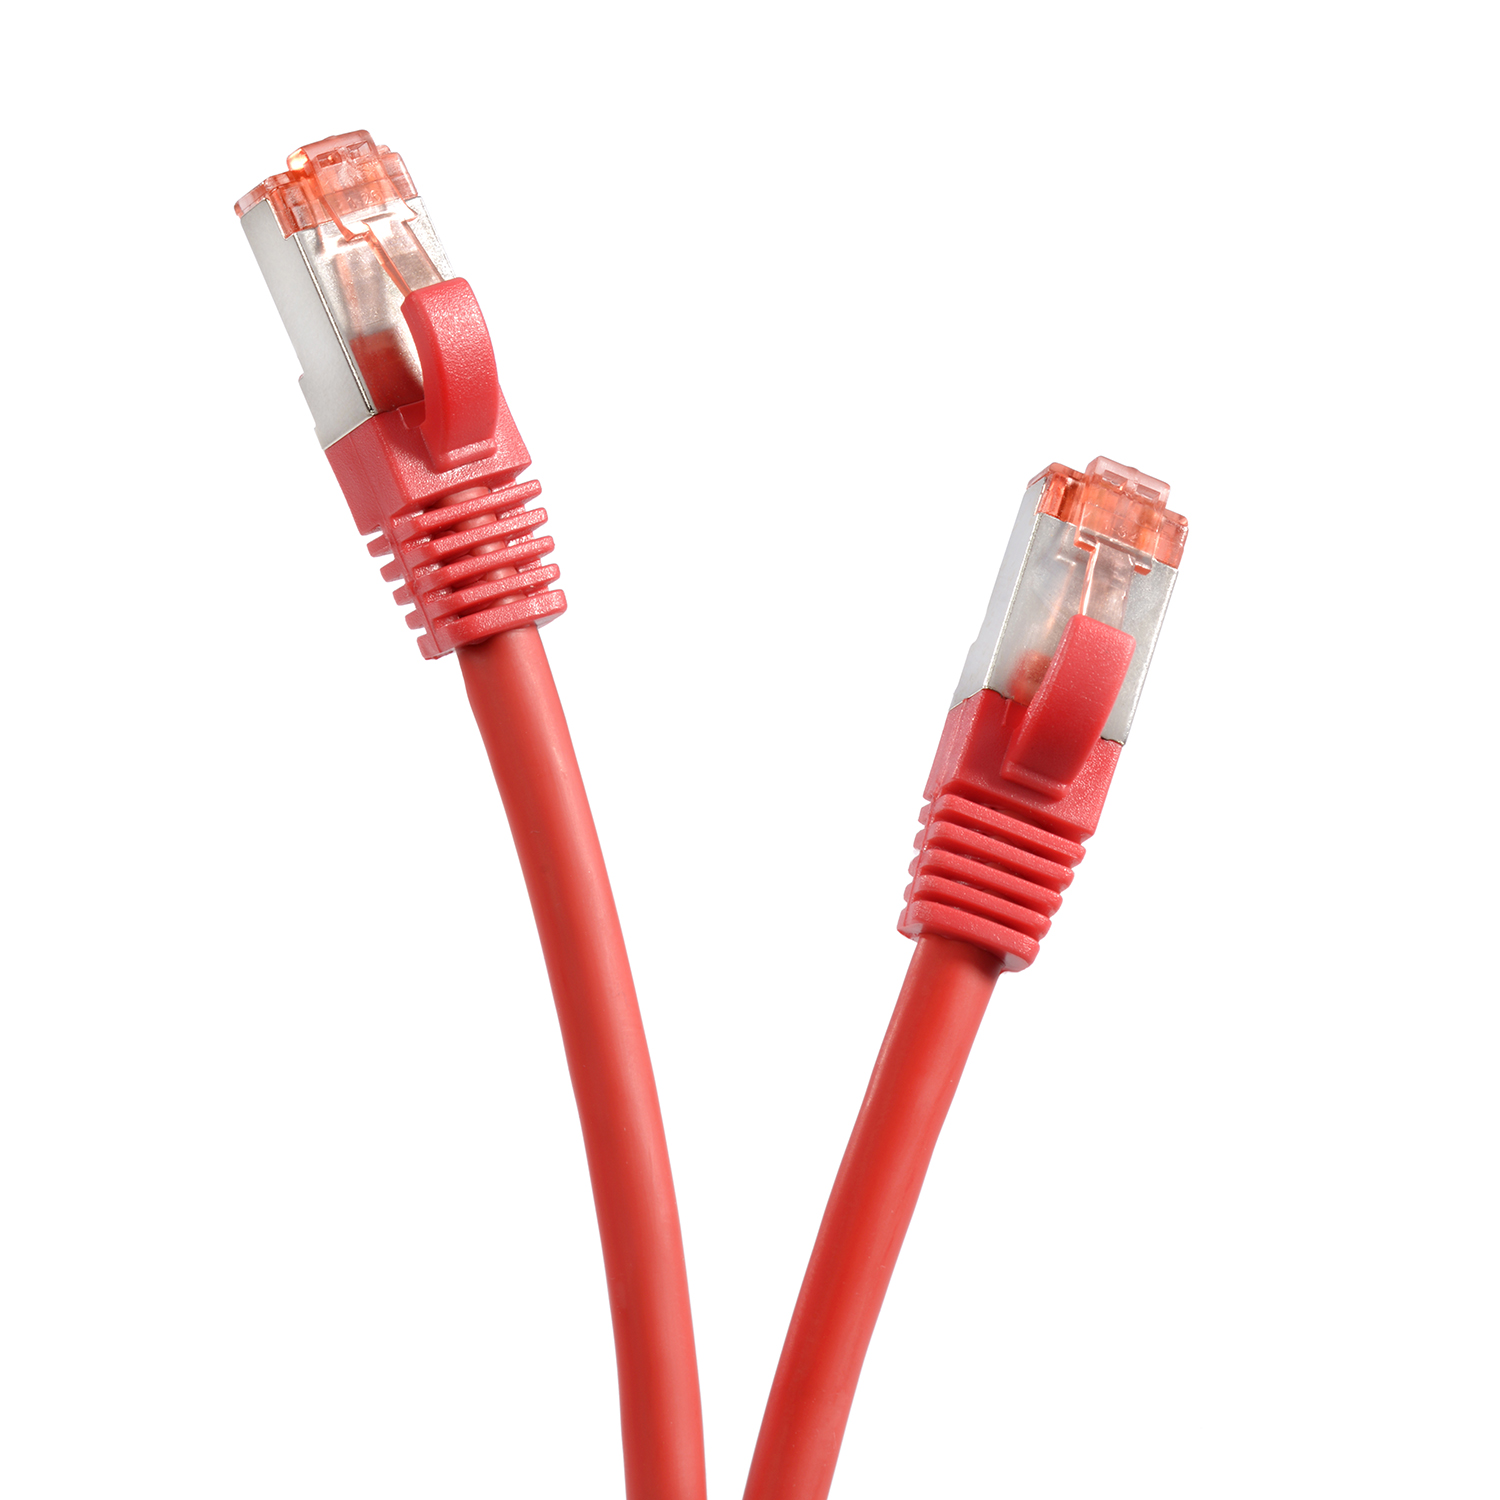 Patchkabel 1000Mbit, TPFNET rot, 3 m Netzwerkkabel, / Netzwerkkabel S/FTP 3m